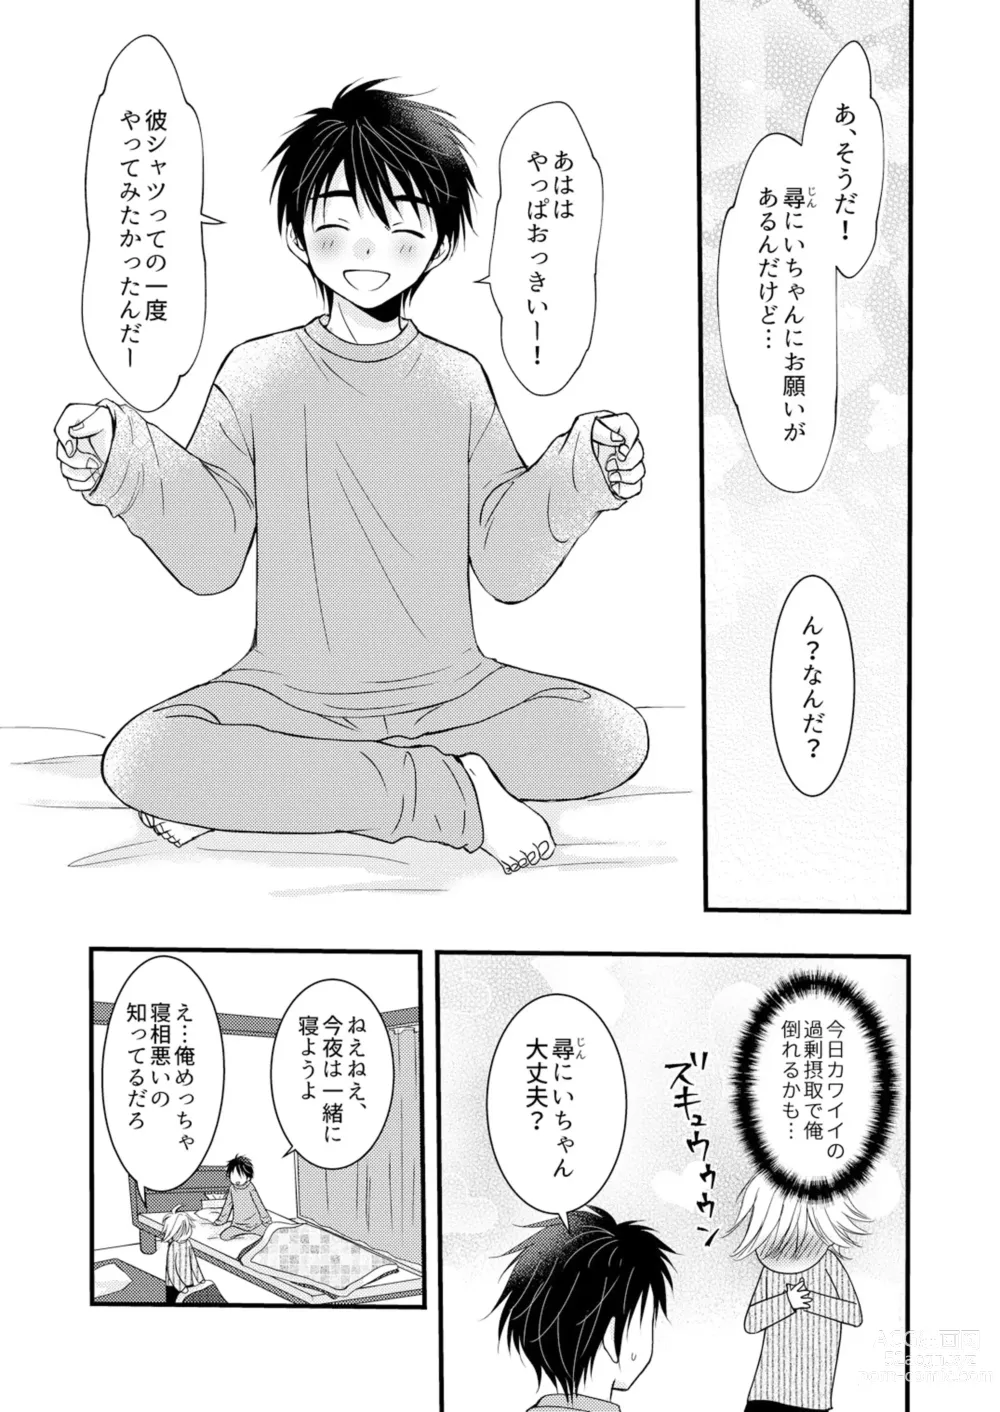 Page 58 of doujinshi Oitekita Umi Seiya Hen